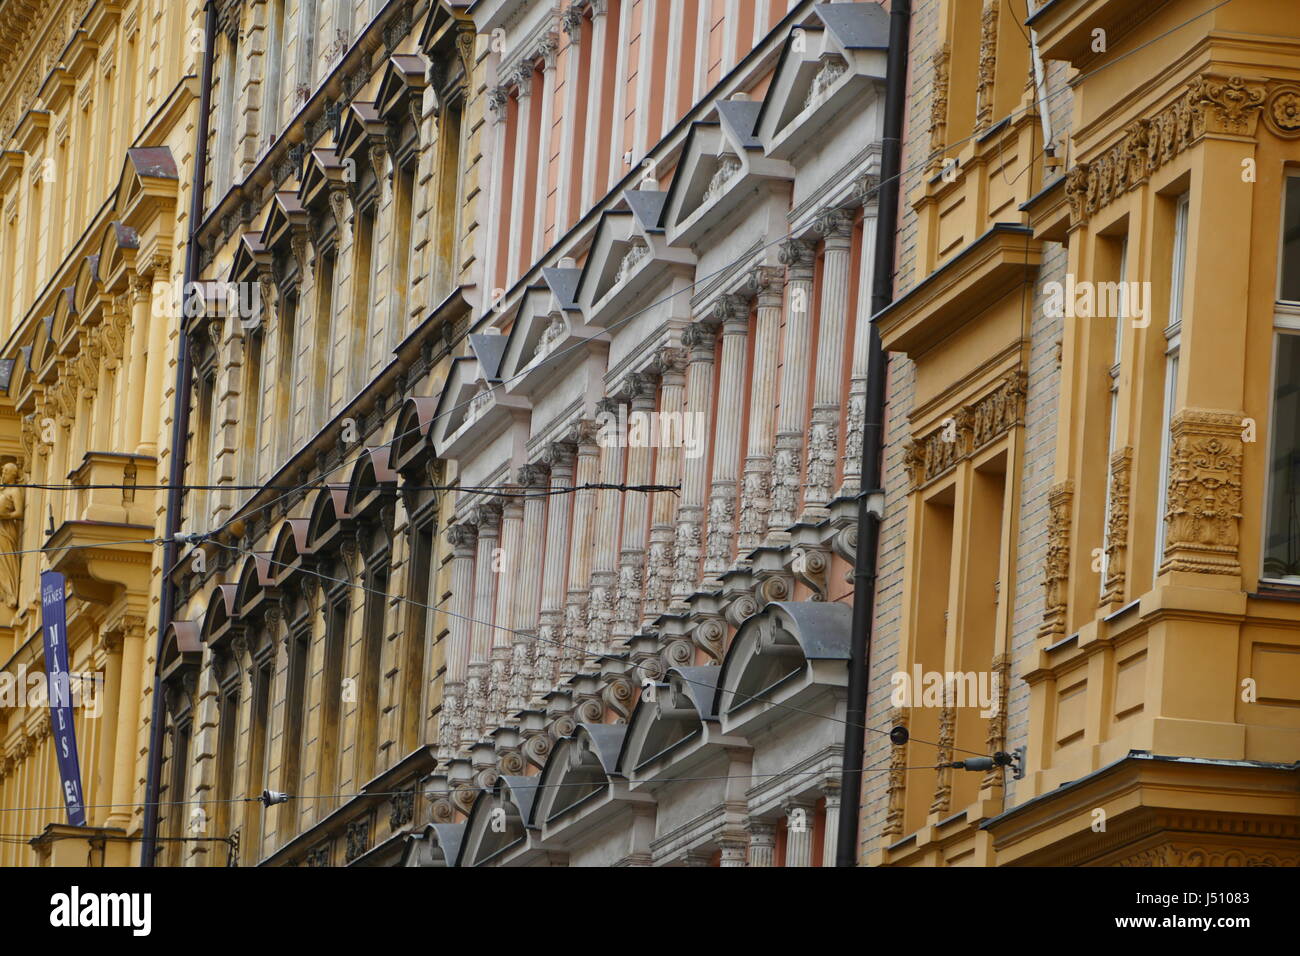 Muchas ventanas en una colorida sección de la maravillosa arquitectura de la ciudad de Praga. Mostaza, limón y edificios color salmón. Foto de stock